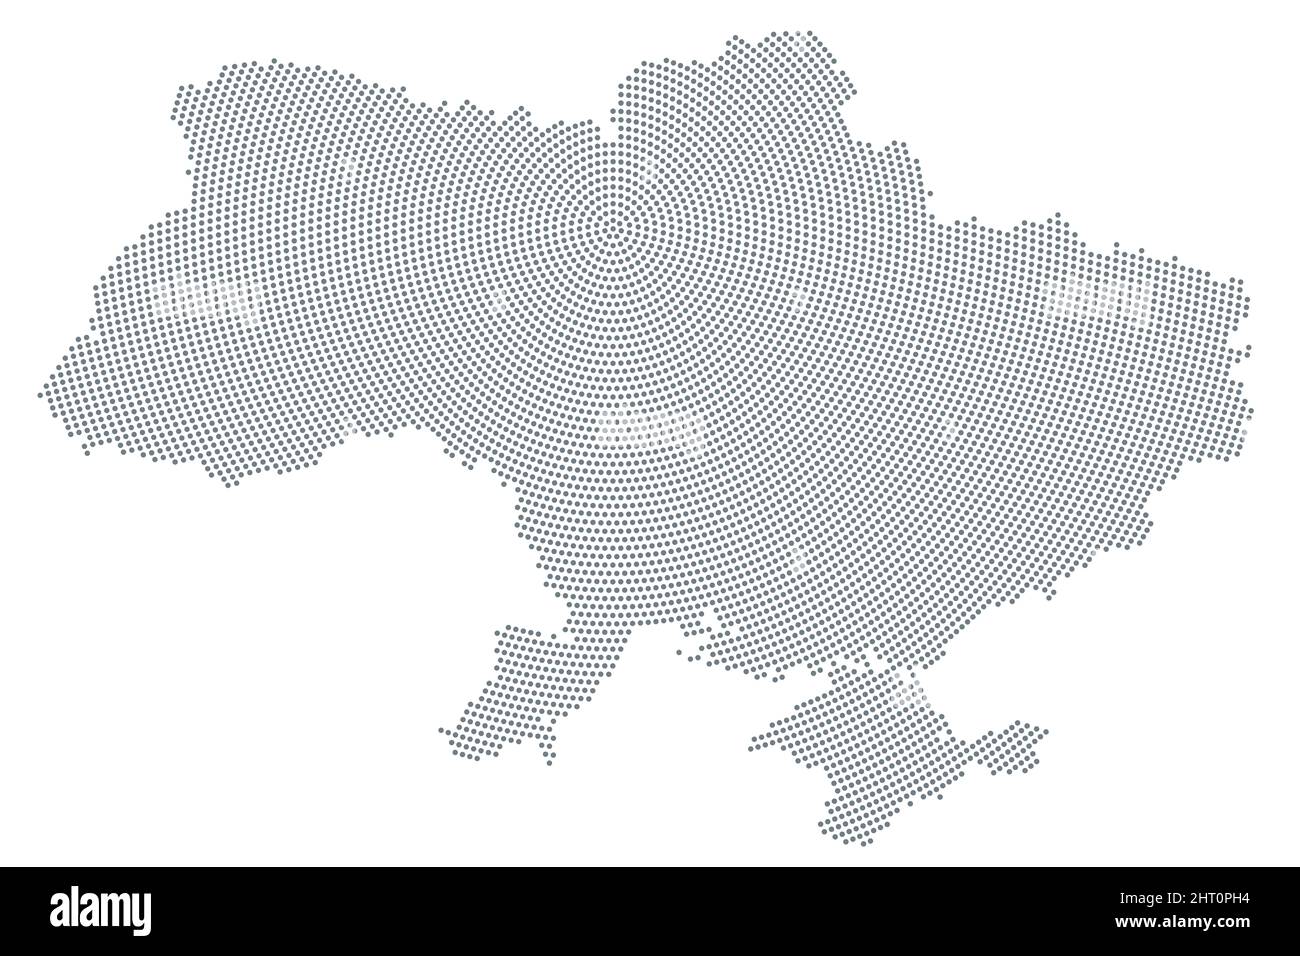 Mappa Ucraina, schema a punti radiale. Punti grigi che vanno dalla capitale Kiev (Kiev) verso l'esterno e formano la sagoma del paese dell'Europa orientale. Foto Stock